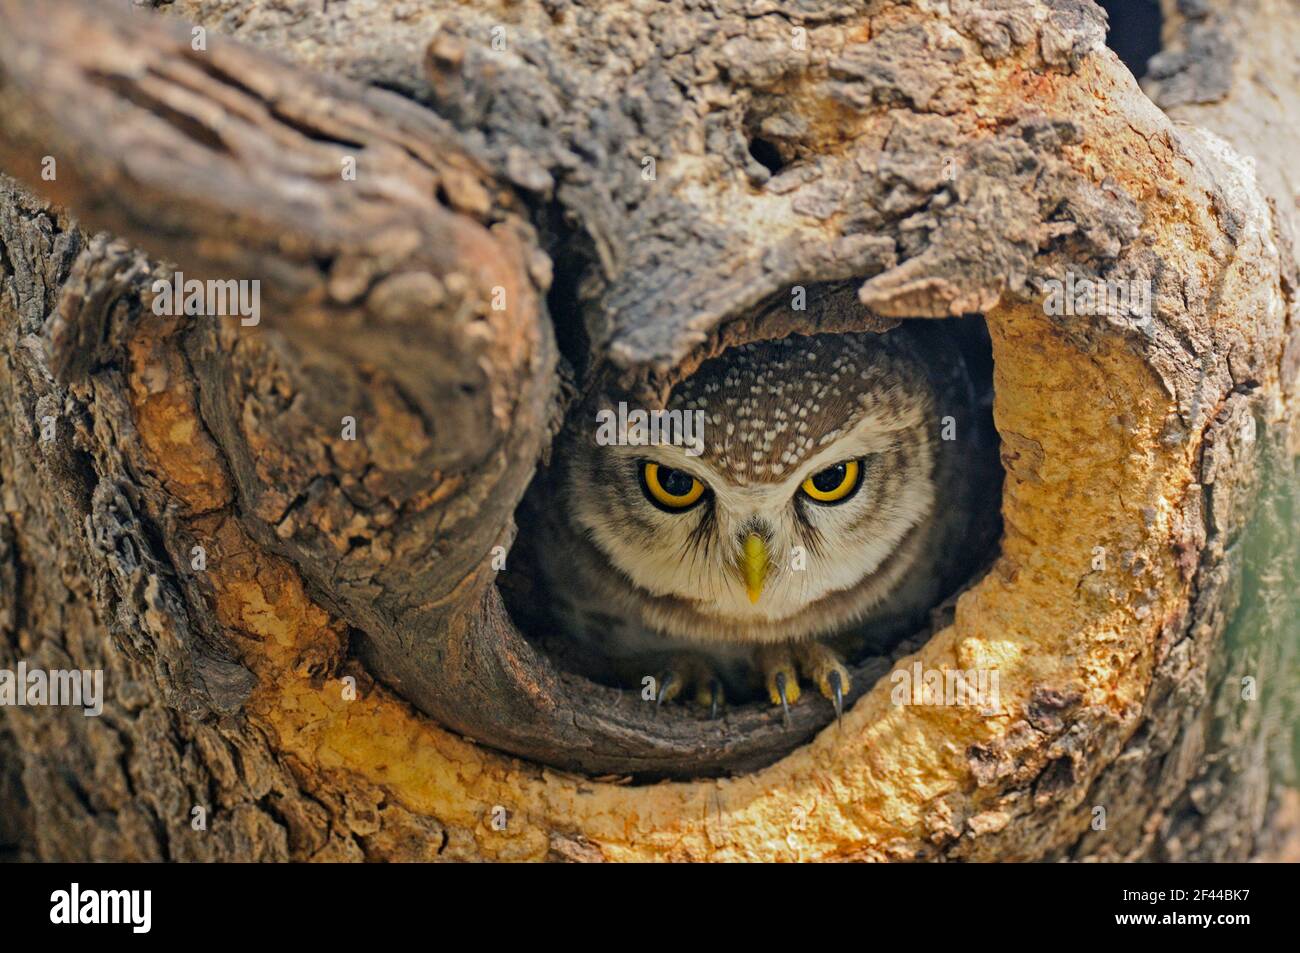 Avvistato Owlet Athene brama in tree hole, Ranthambore National Park, Wildlife Sanctuary, Ranthambhore, Sawai Madhopur, Rajasthan, India, Asia Foto Stock